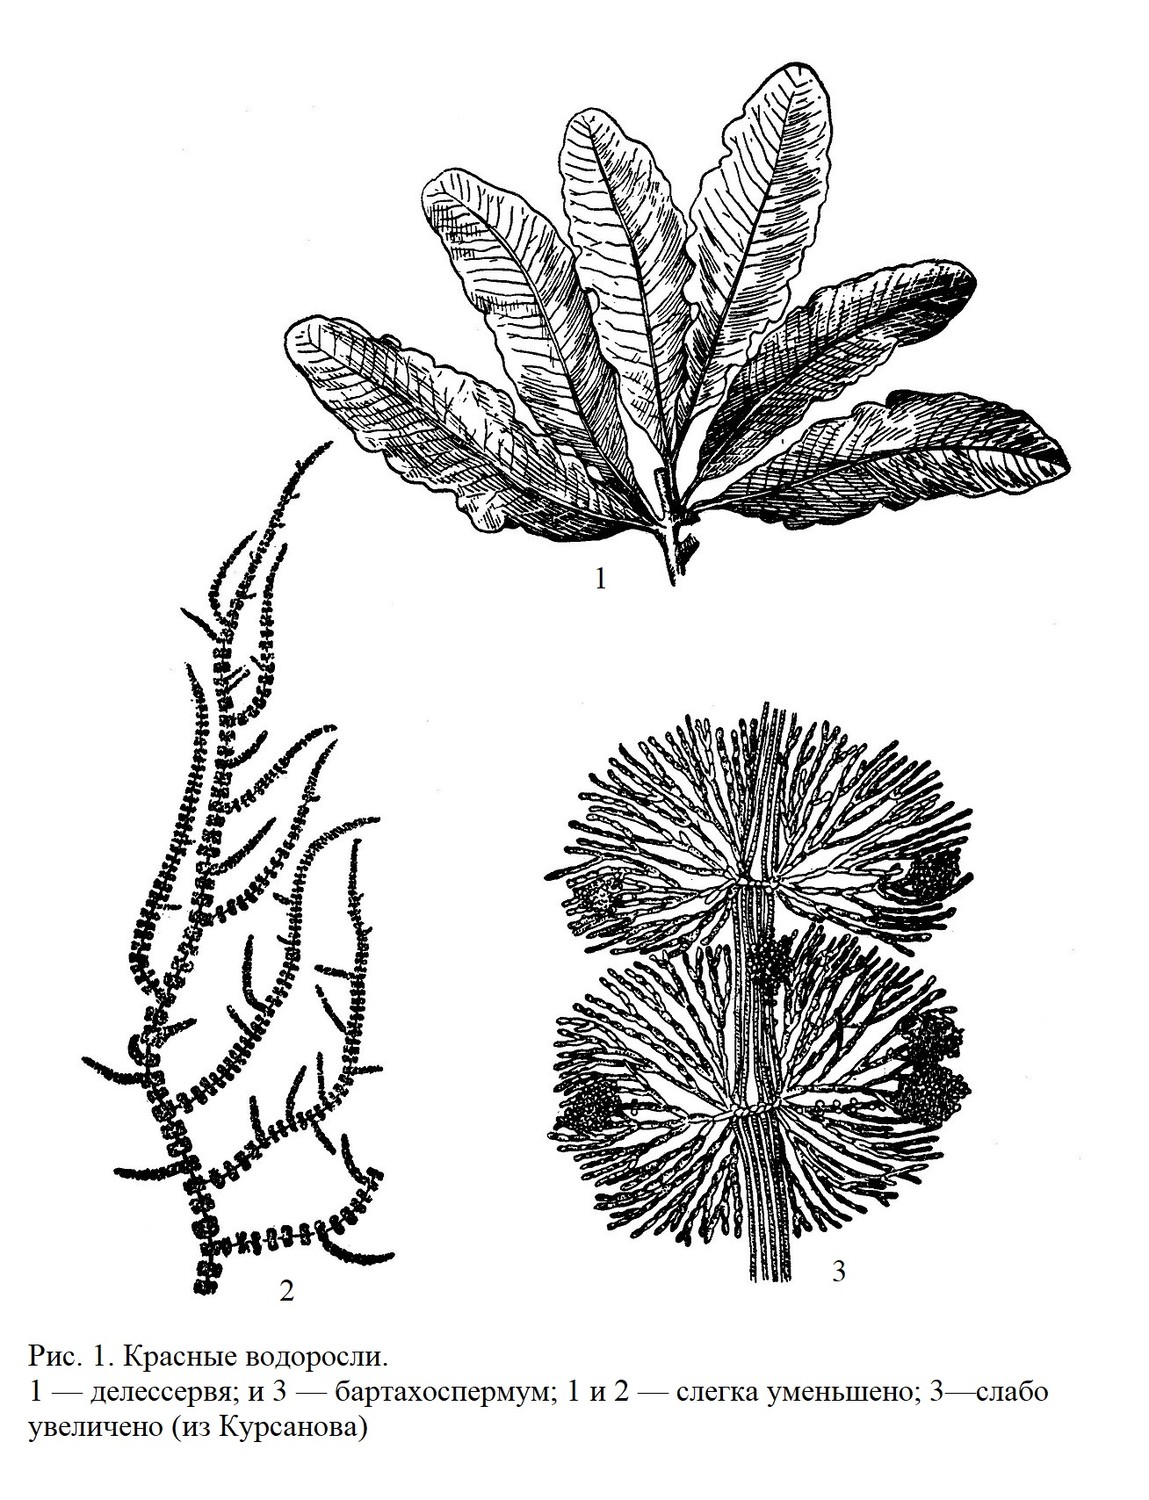 Класс красные водоросли или багрянки (Rhodophyceae)